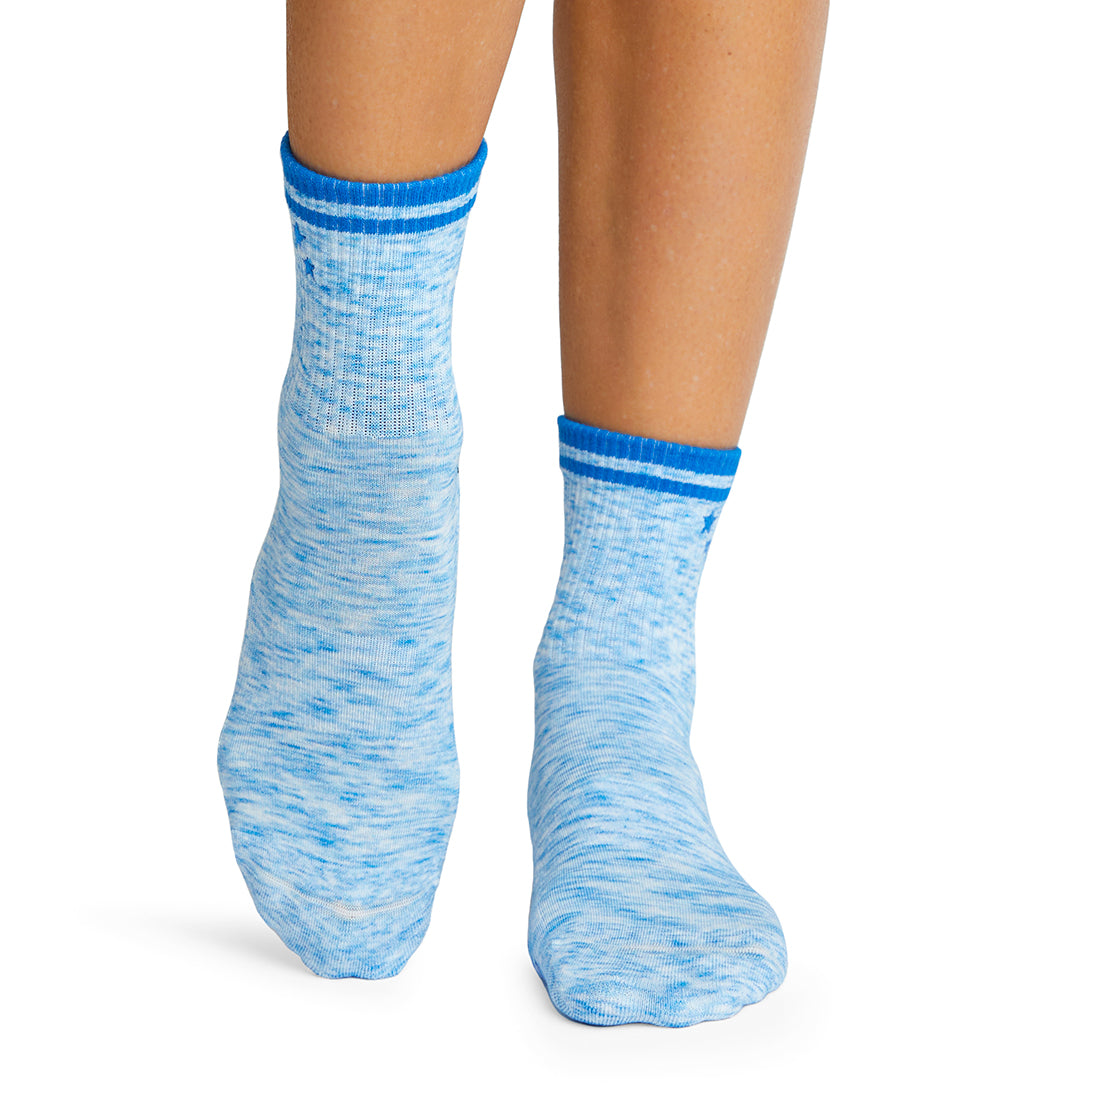 Tavi Grip Aria Slip-On Sock in Carbon Heather, BANDIER - M - BANDIER